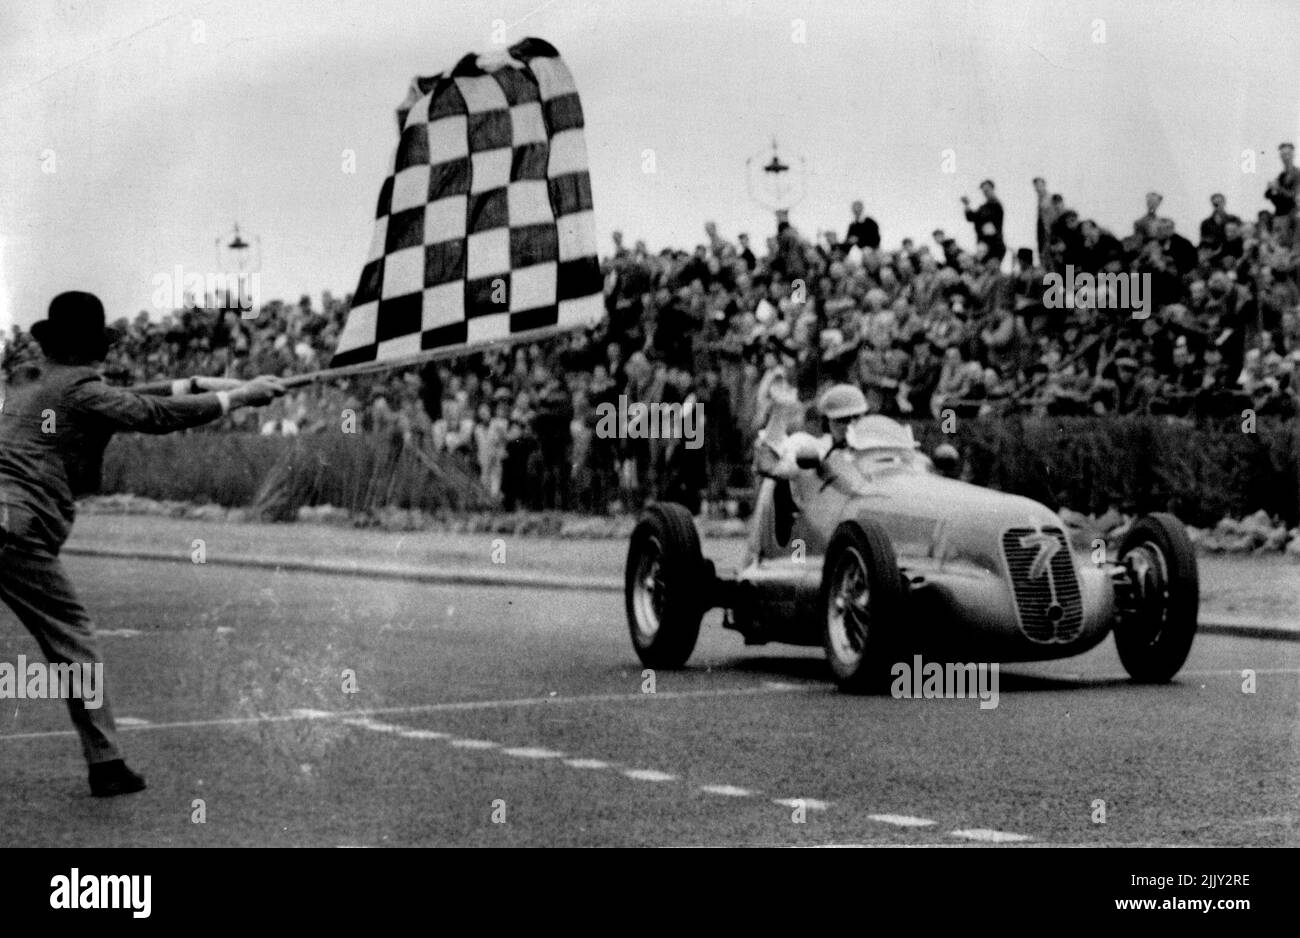 Briton remporte la course internationale sur route à Jersey -- R. Parnell, de Derby, (Angleterre) conduite à la Maserati super chargée de 1½ litre gagnant la course internationale sur route de 160 miles à St. Helier, Jersey, 8 mai à une vitesse moyenne de 84,52 MPH. Louis Chiron (France) l'une des équipes de Maserati a été deuxième avec Raymond Mays, conduisant un britannique E.R.A. troisième. Seuls 14 des 25 démarreurs ont terminé le cours. 28 juin 1930. (Photo par photo de presse associée). Banque D'Images